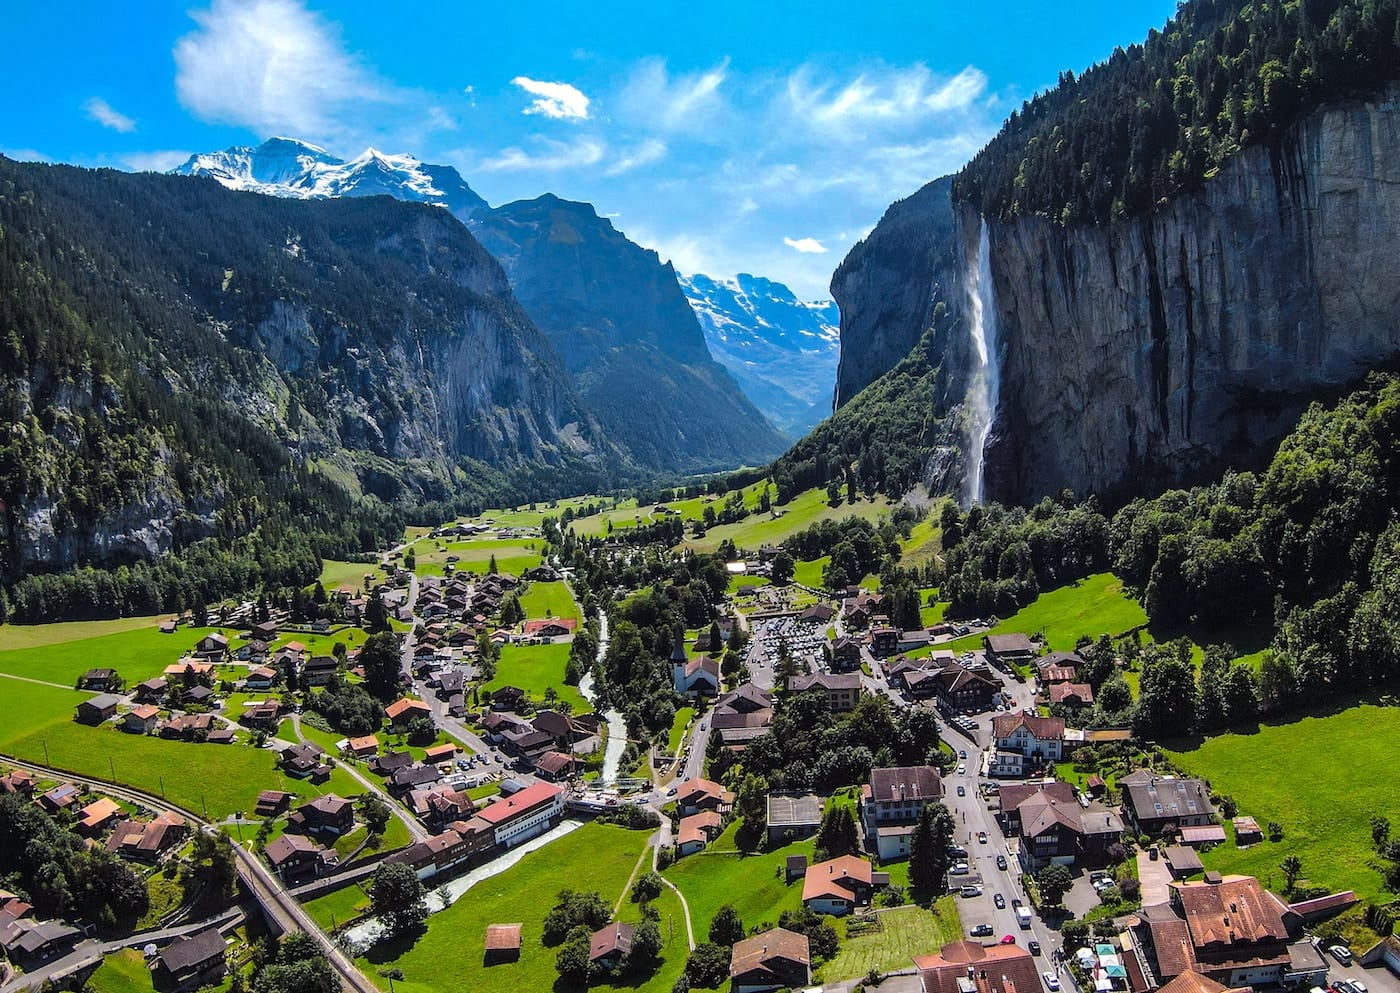 Gratis doen in Zwitserland: bezoek de Staubbachwaterval in Lauterbrunnen